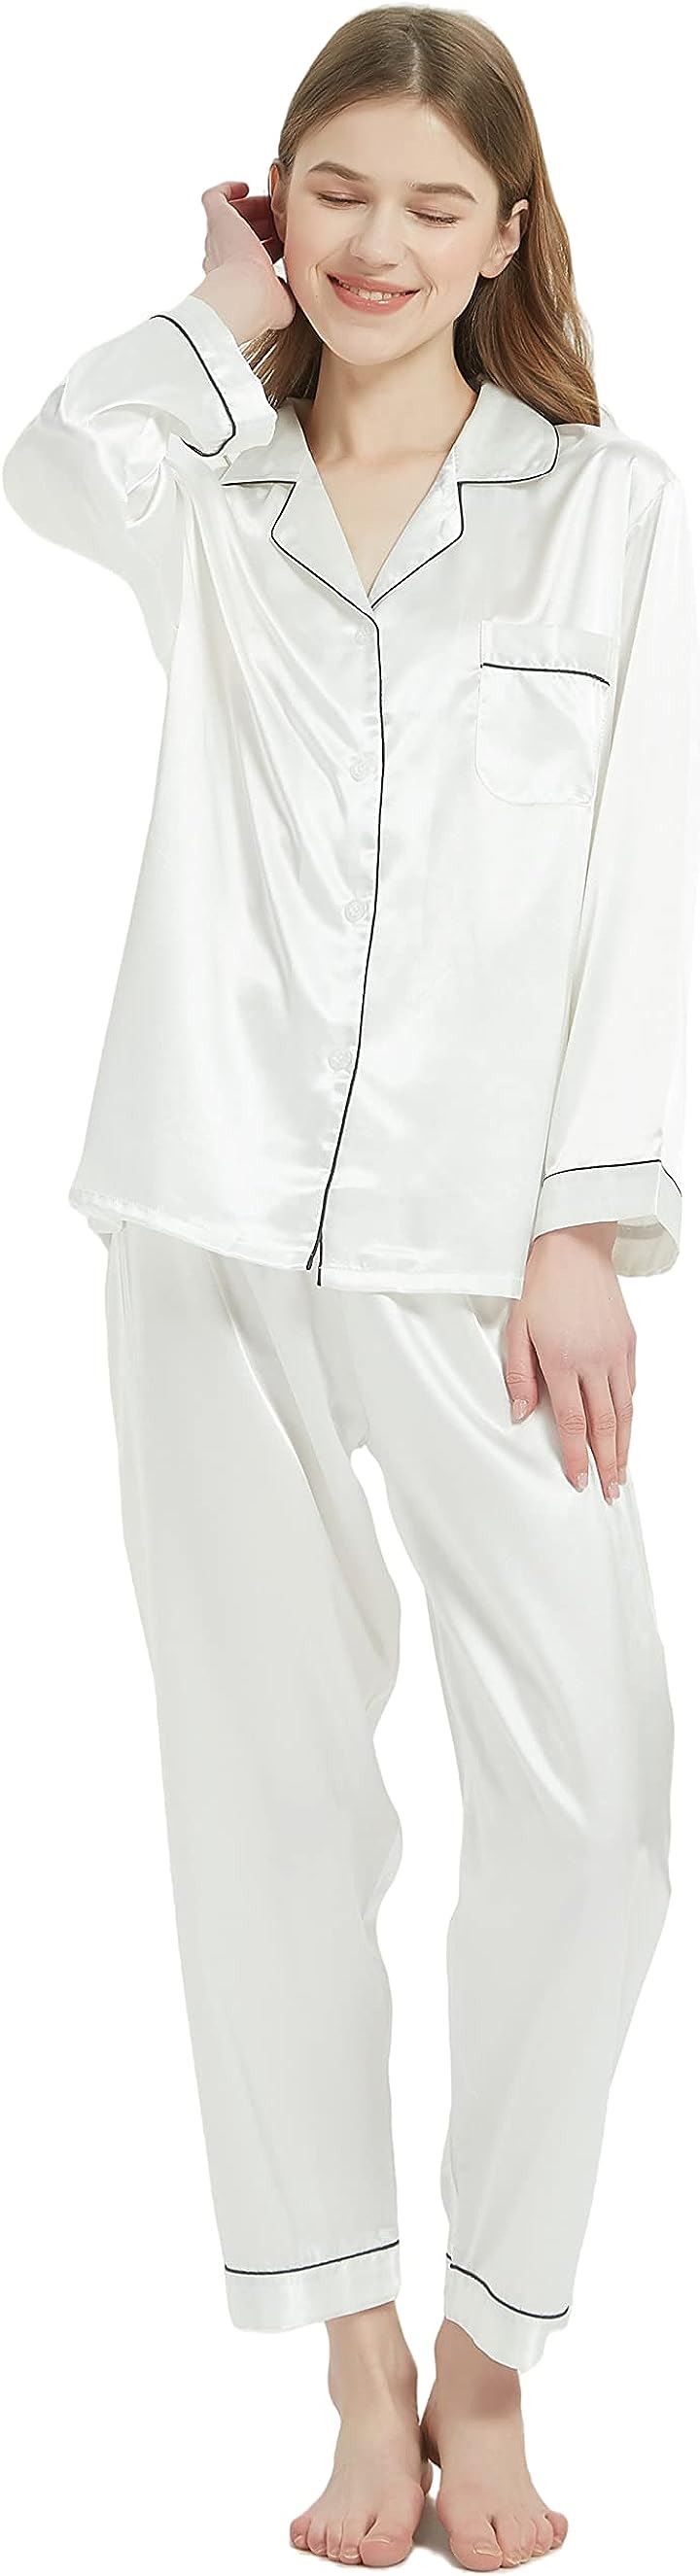 【送料無料】 パジャマ KUMASENレディース 上下セット XL) ホワイト, 前開き( 長袖 部屋着 ルームウェア パジャマ